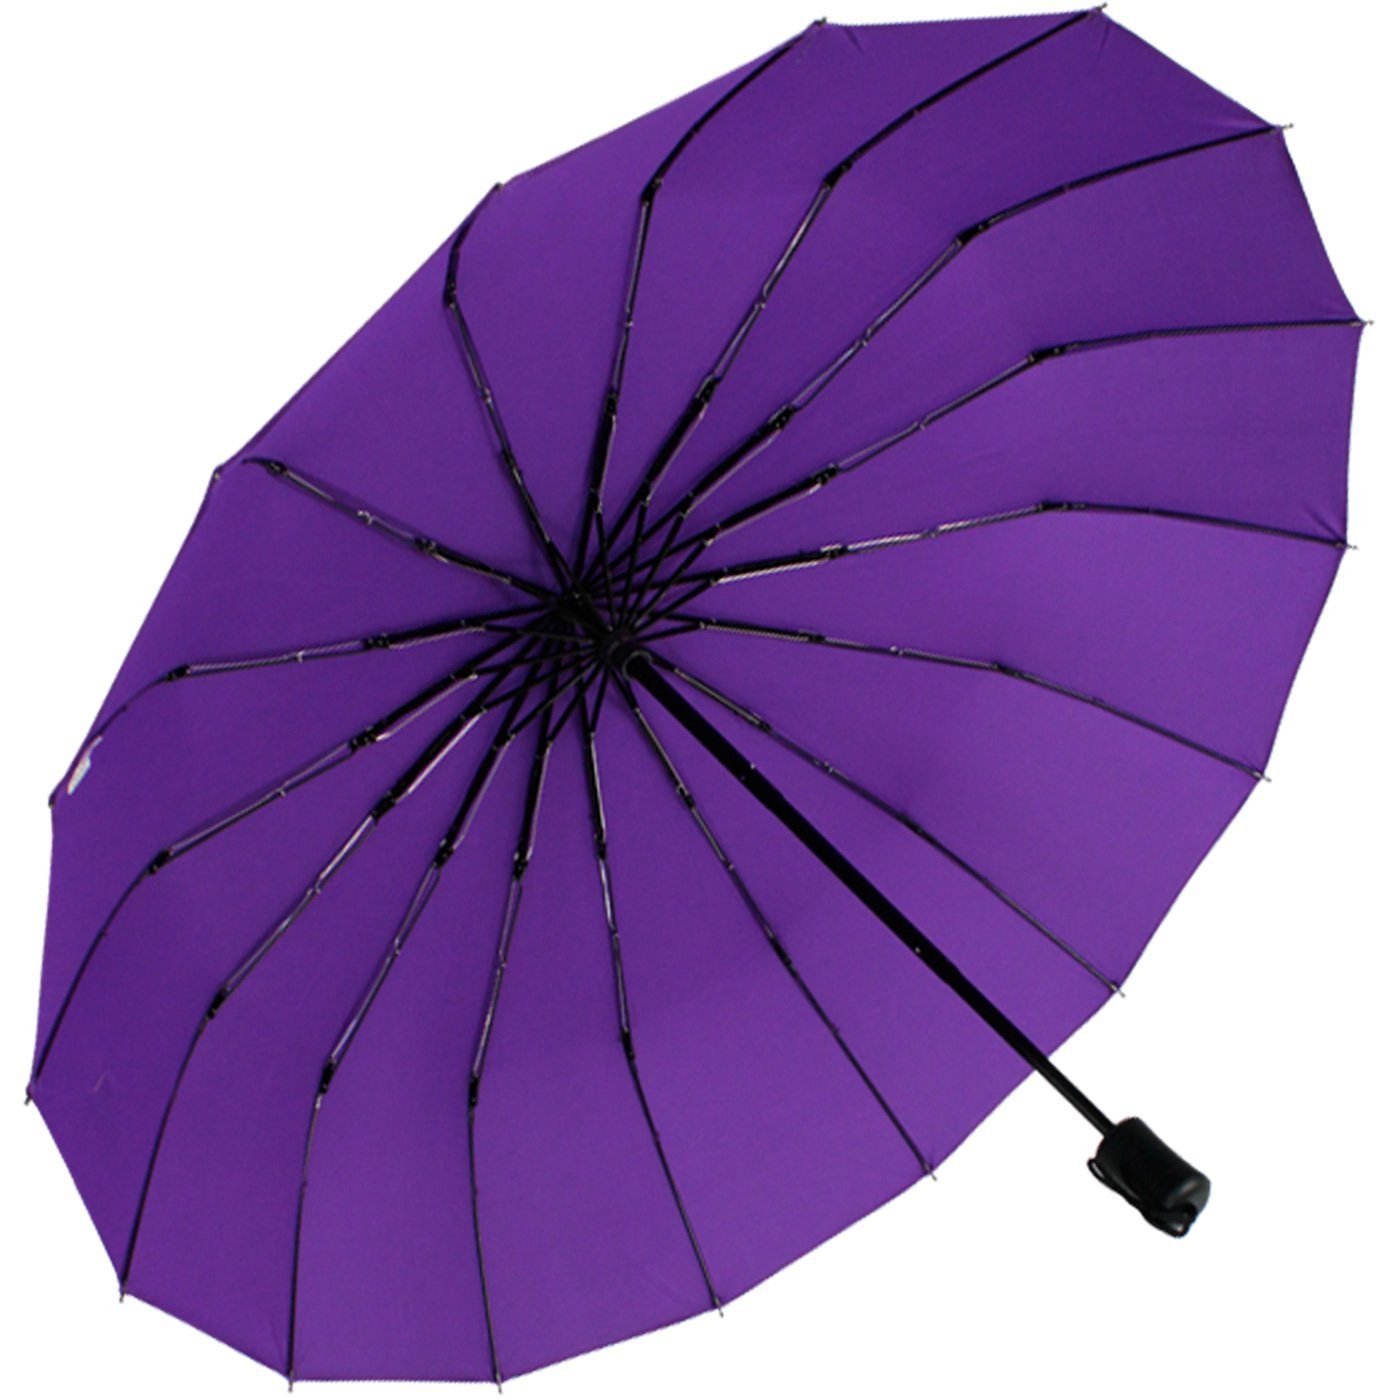 Mini stabil und farbenfroh iX-brella farbenfroh, Streben lila extra 16 Taschenregenschirm mit